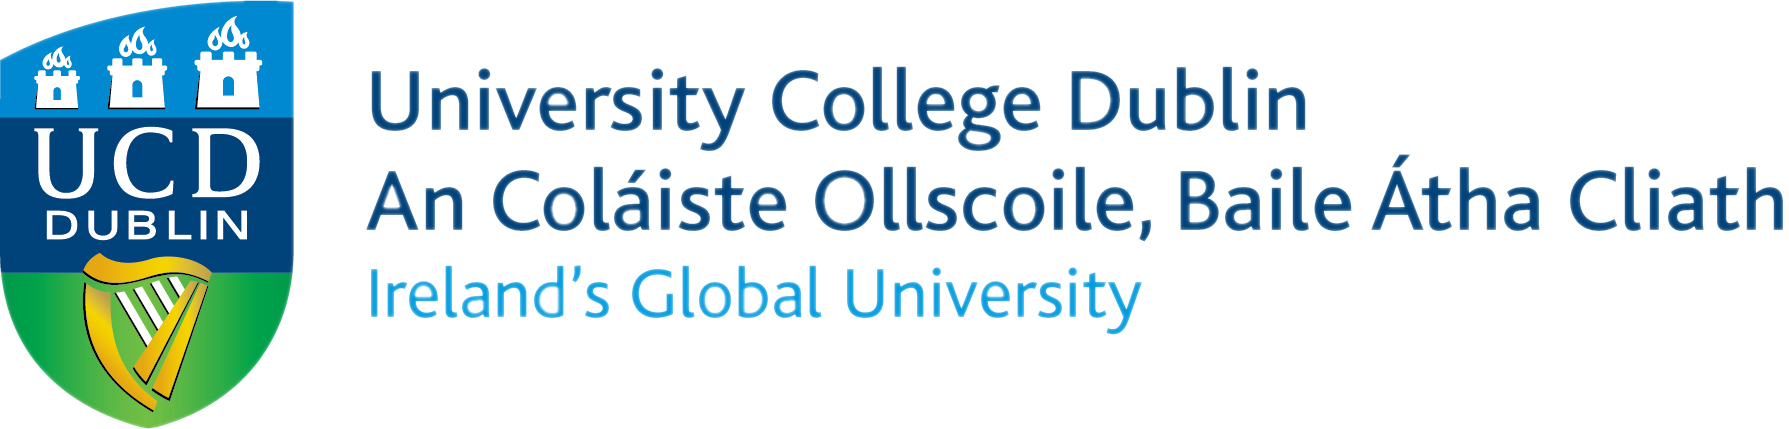 Logo for University College Dublin Pressbooks Network